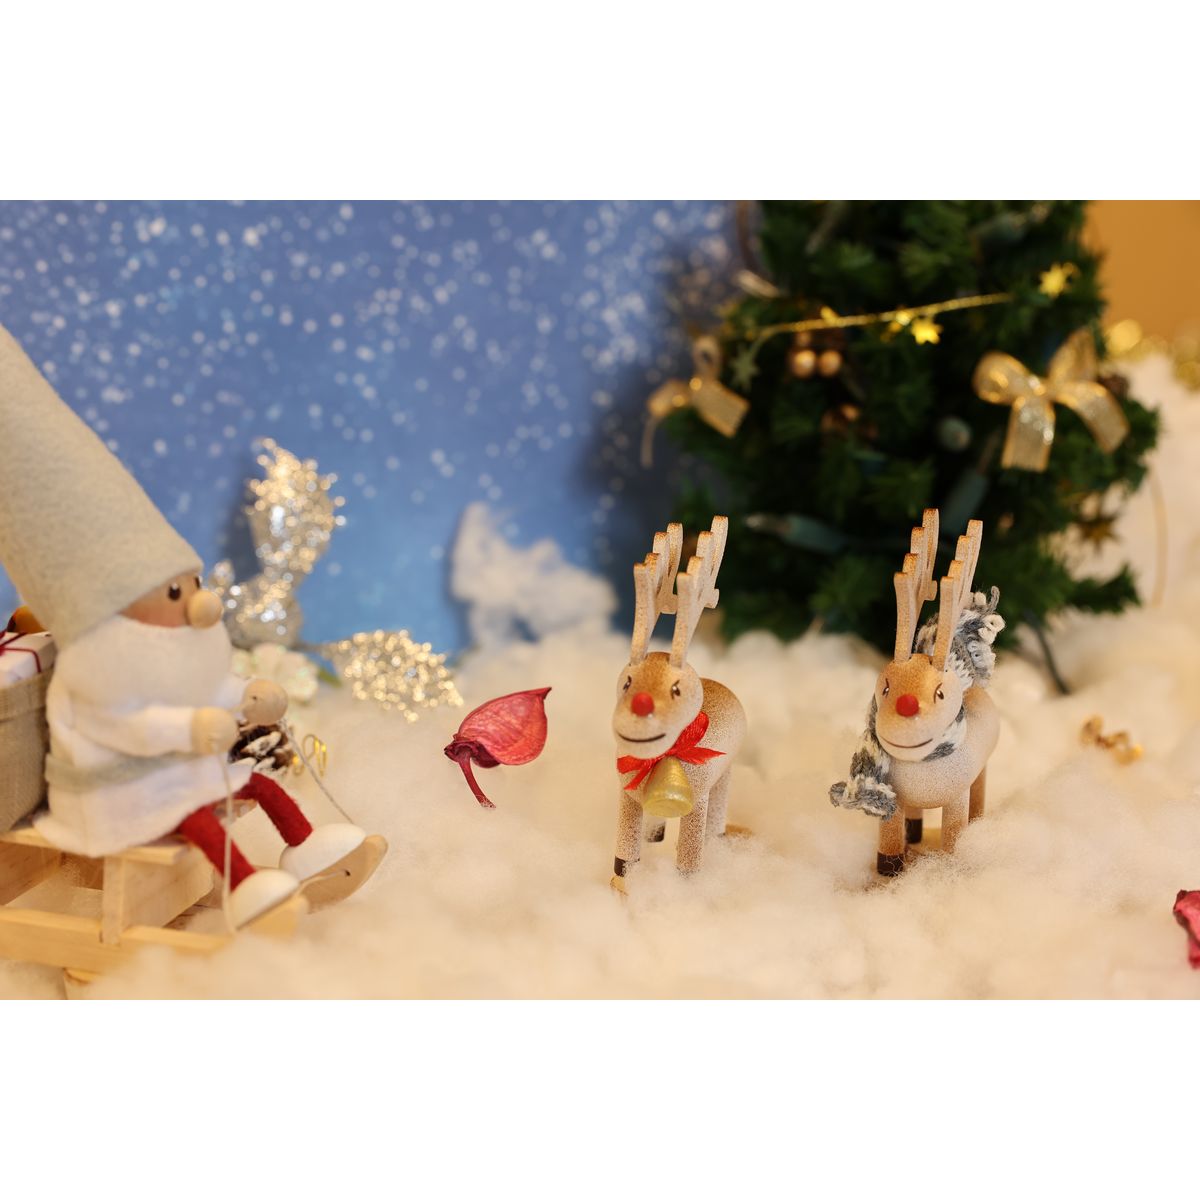 ノルディカ ニッセ クリスマス 木製人形 トナカイ ブラウン ベル